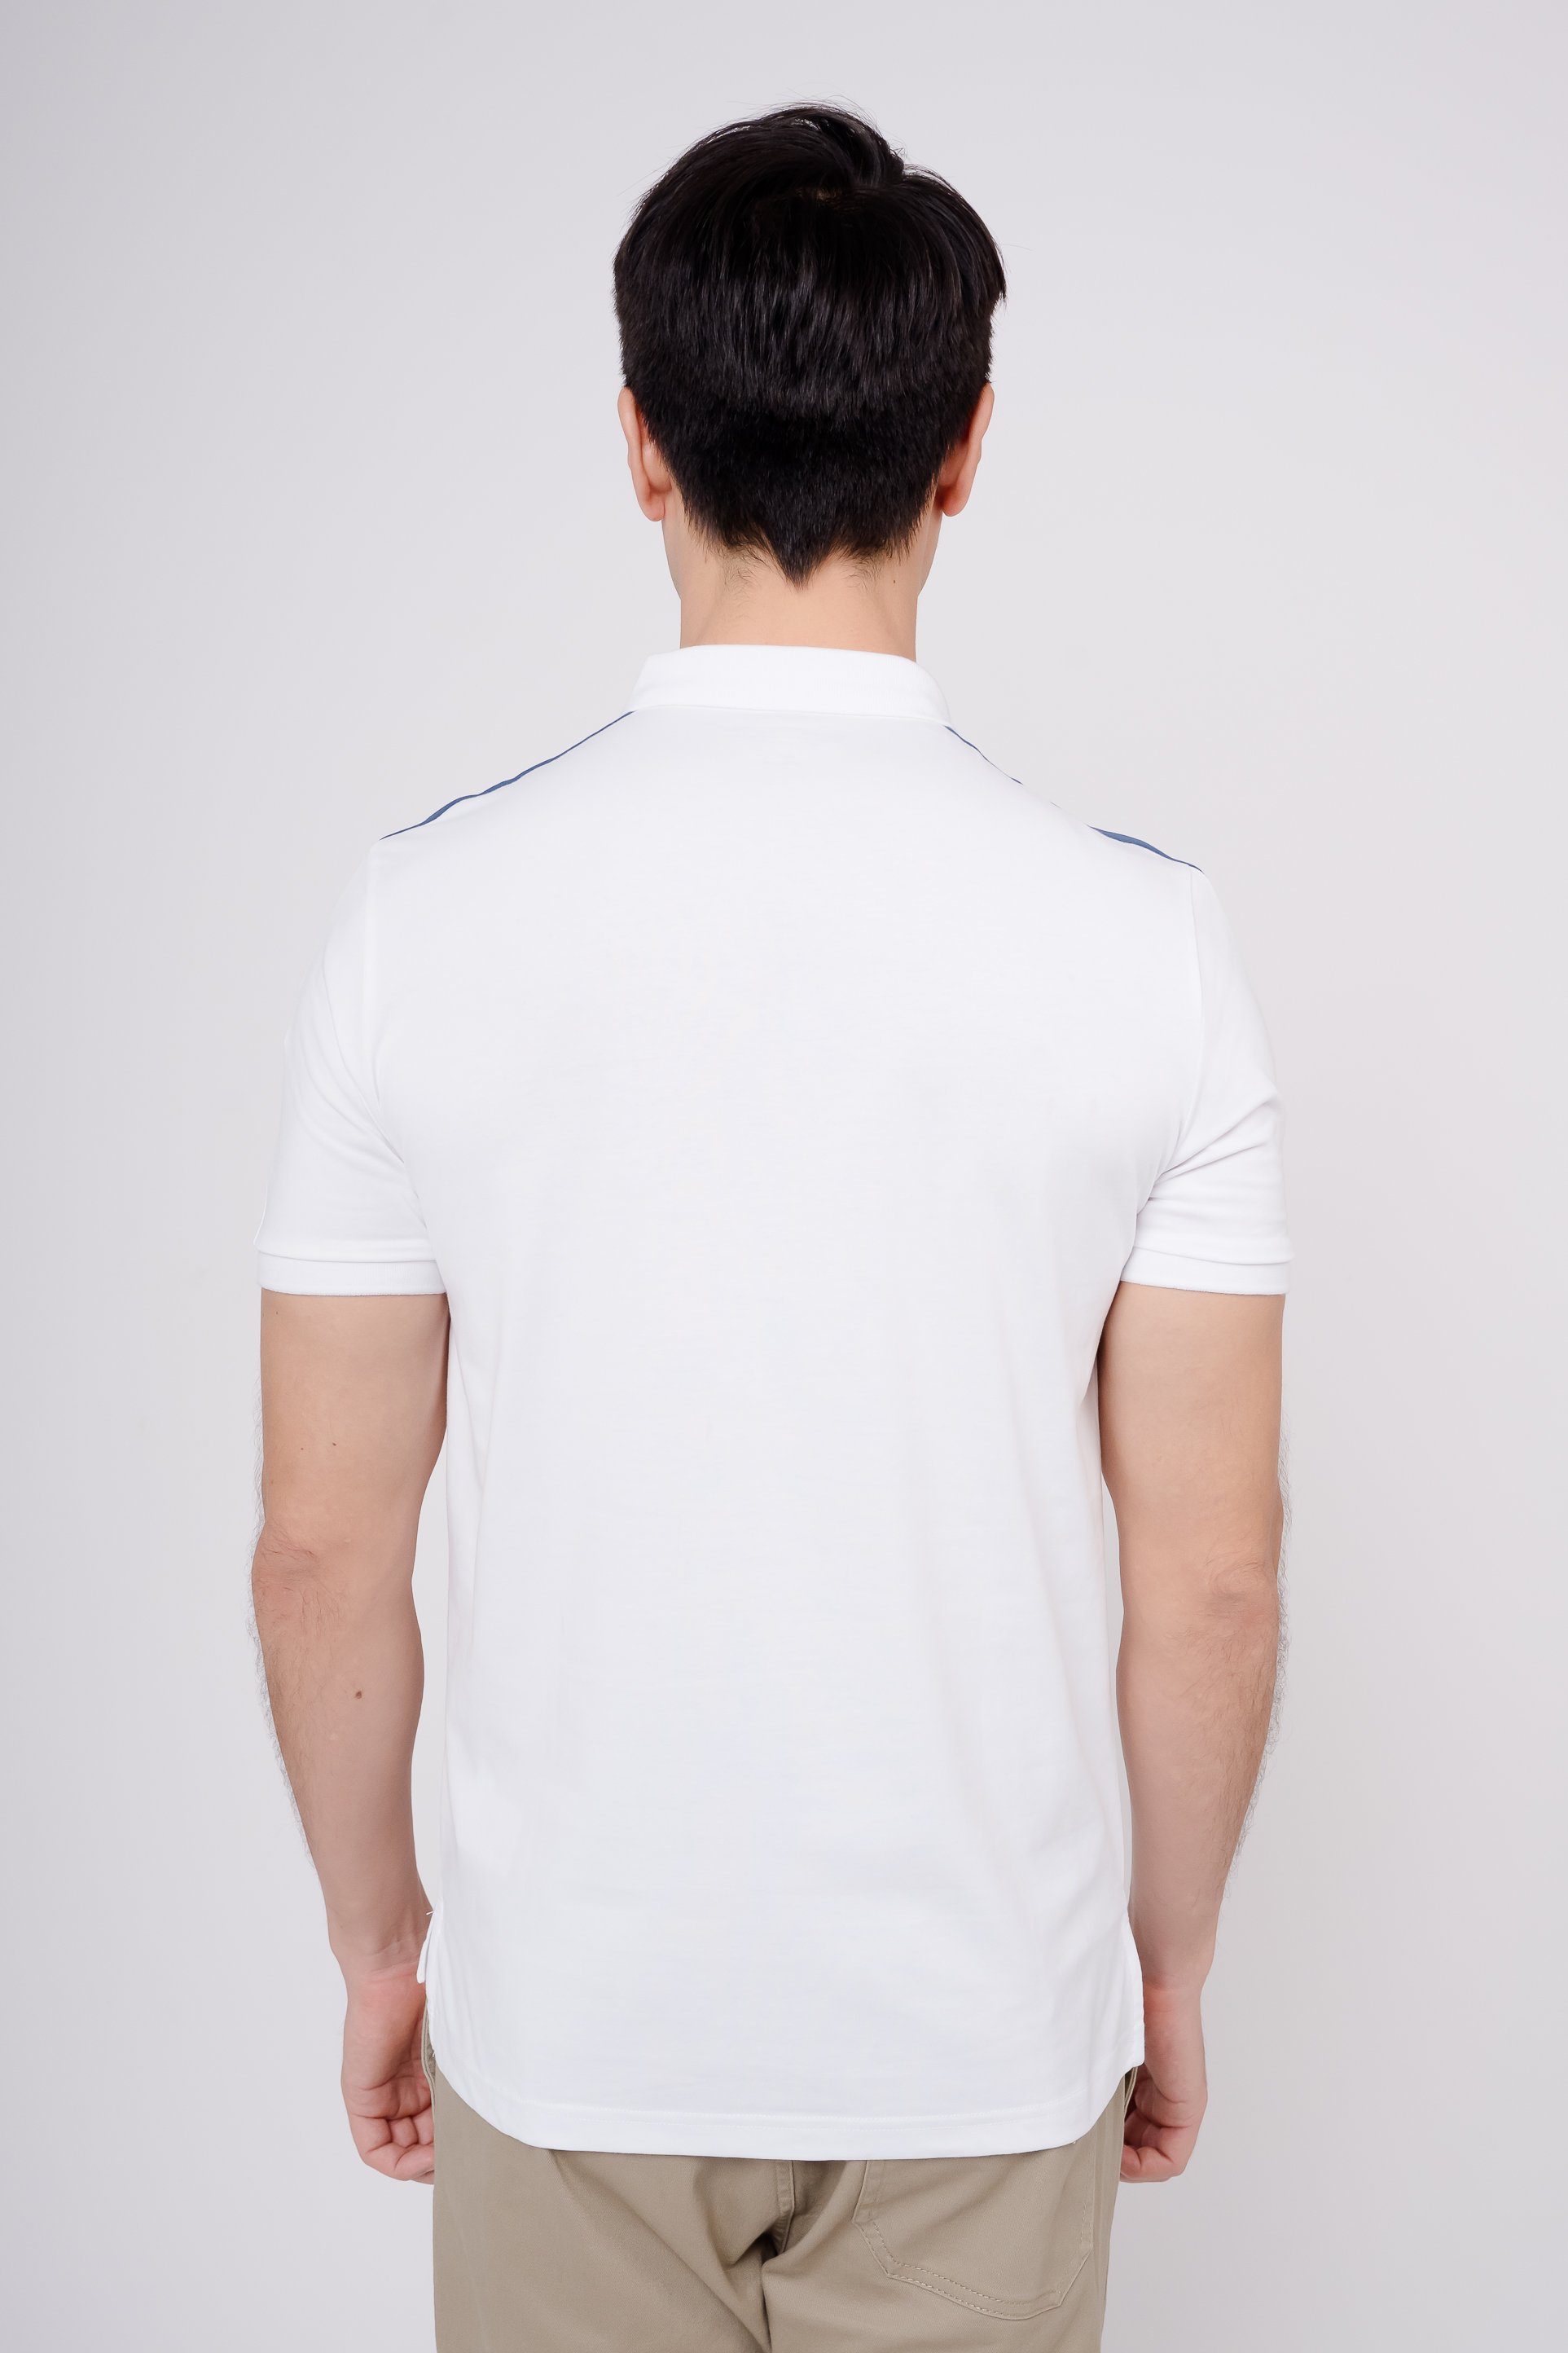 mit weiß-blau Poloshirt Quick-Dry-Technologie GIORDANO Sorona